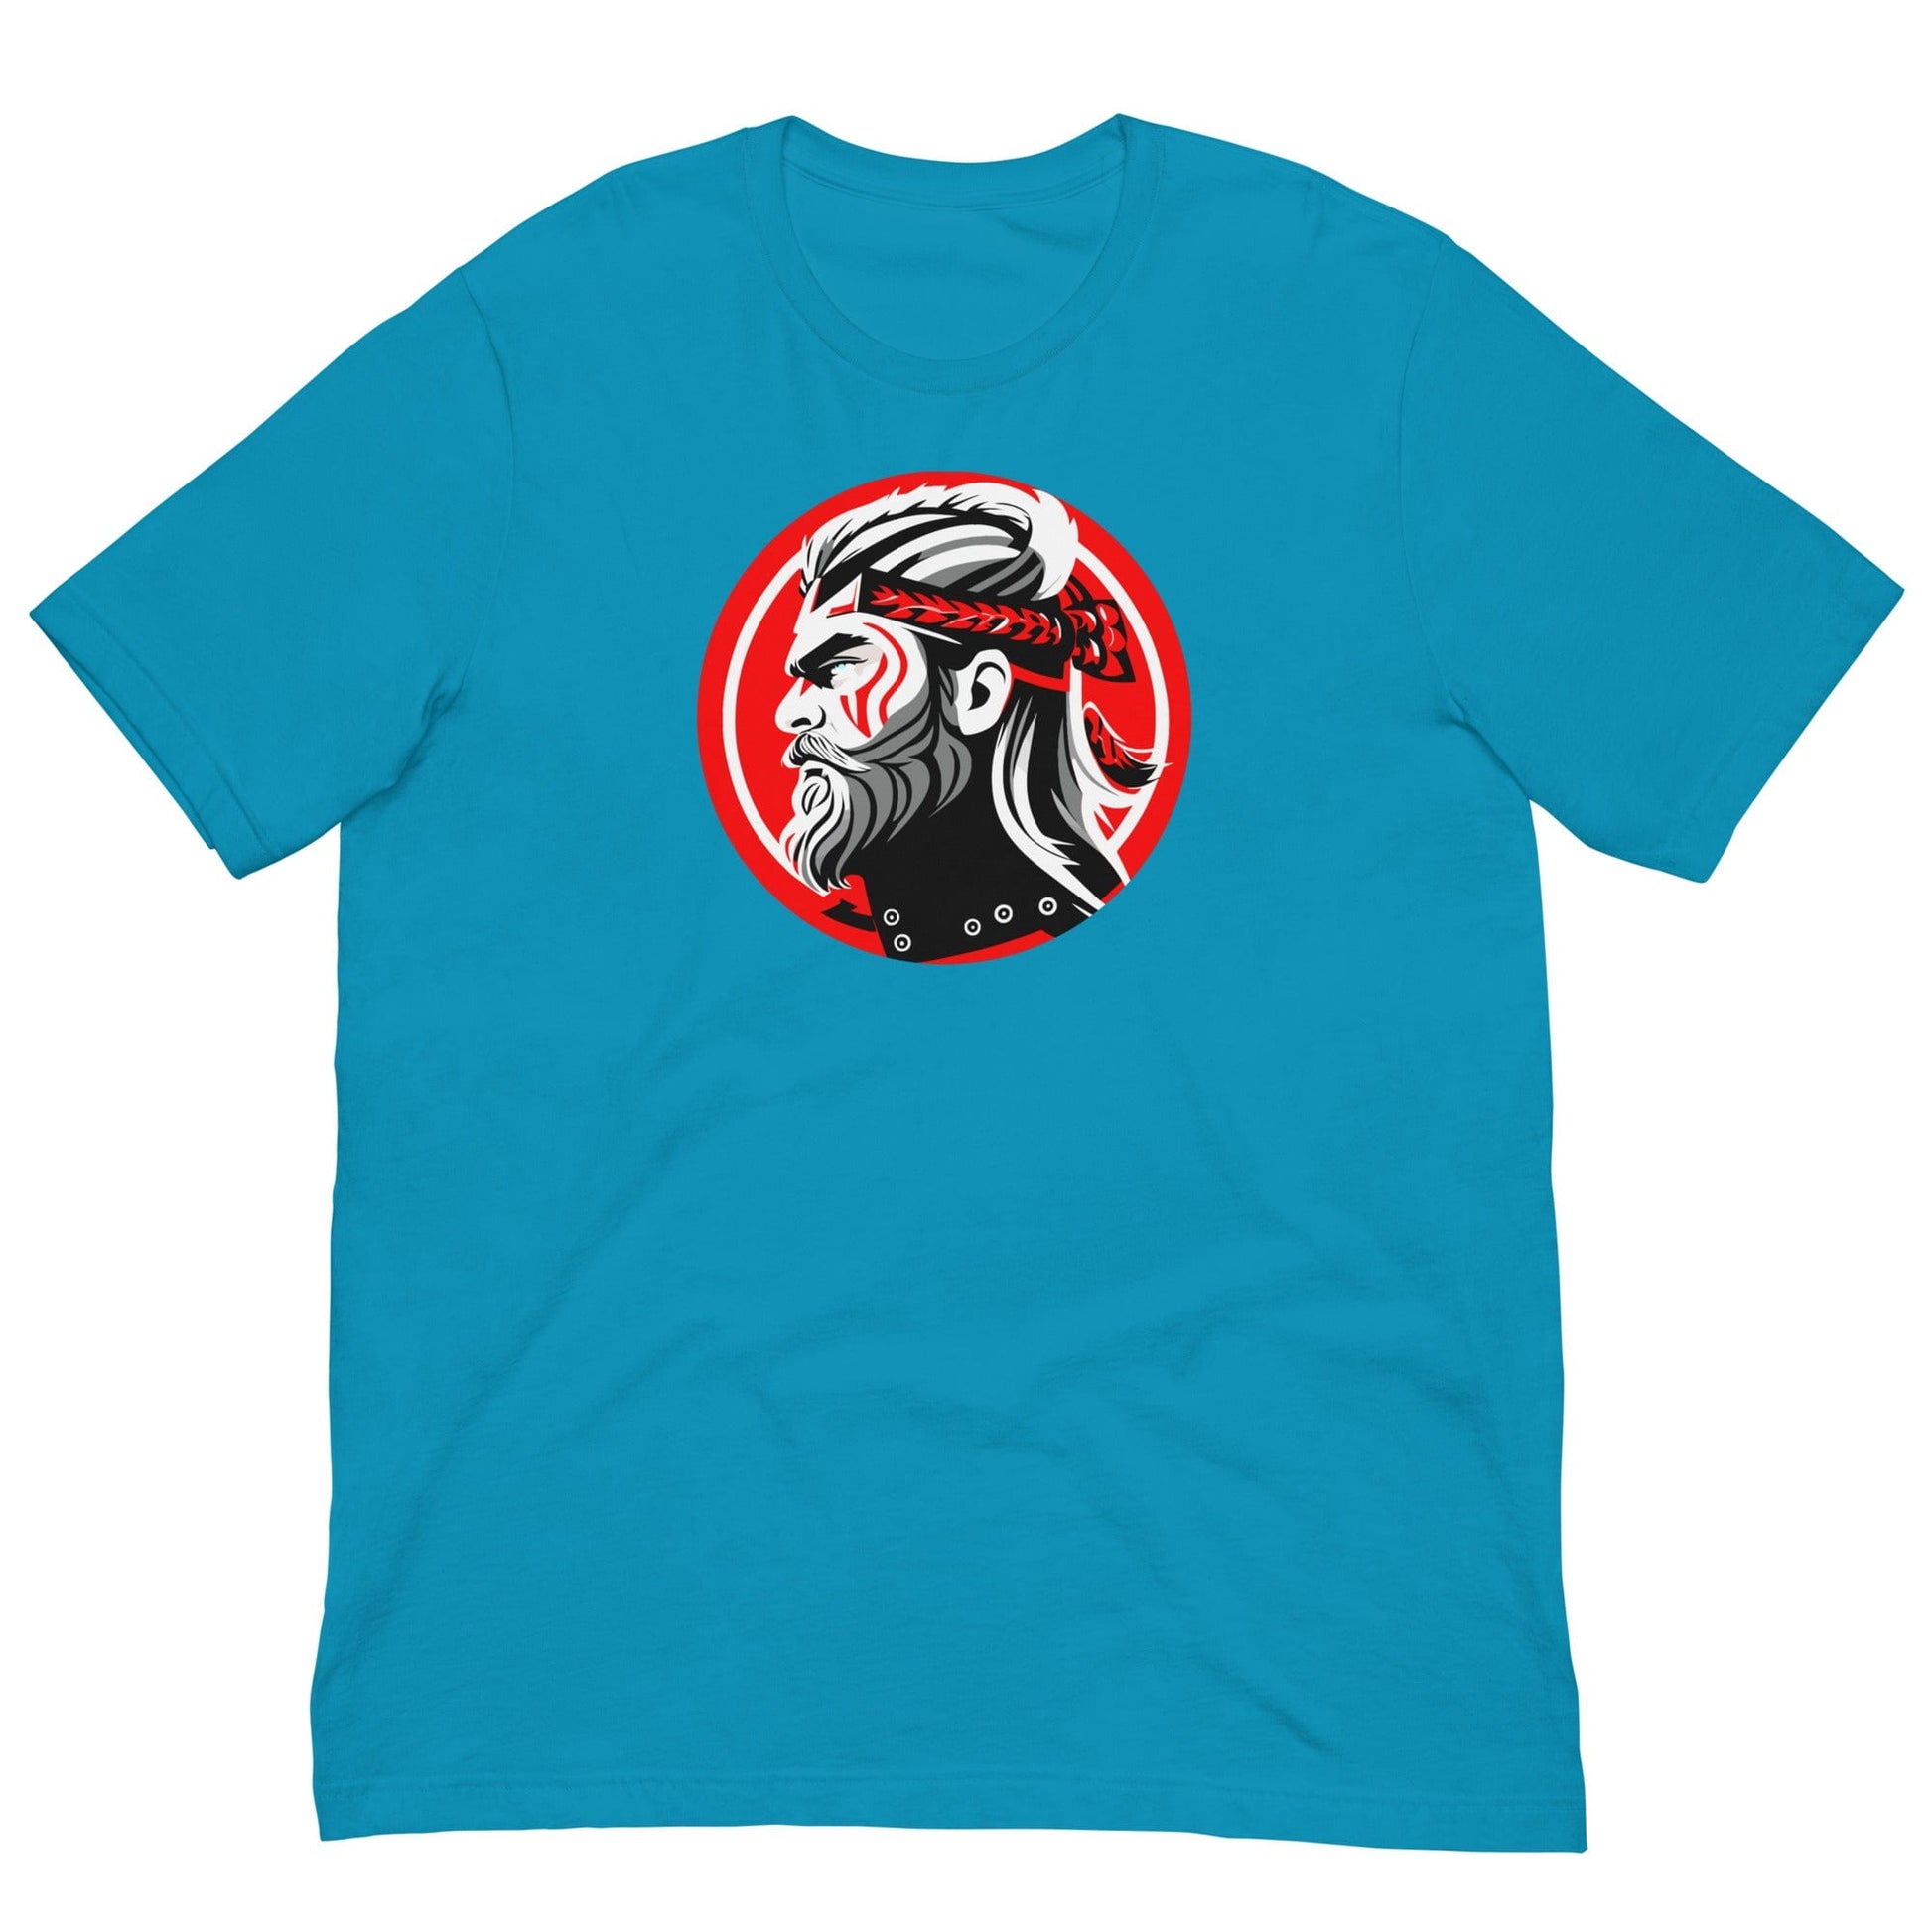 Samurai Warrior T-shirt Aqua / S